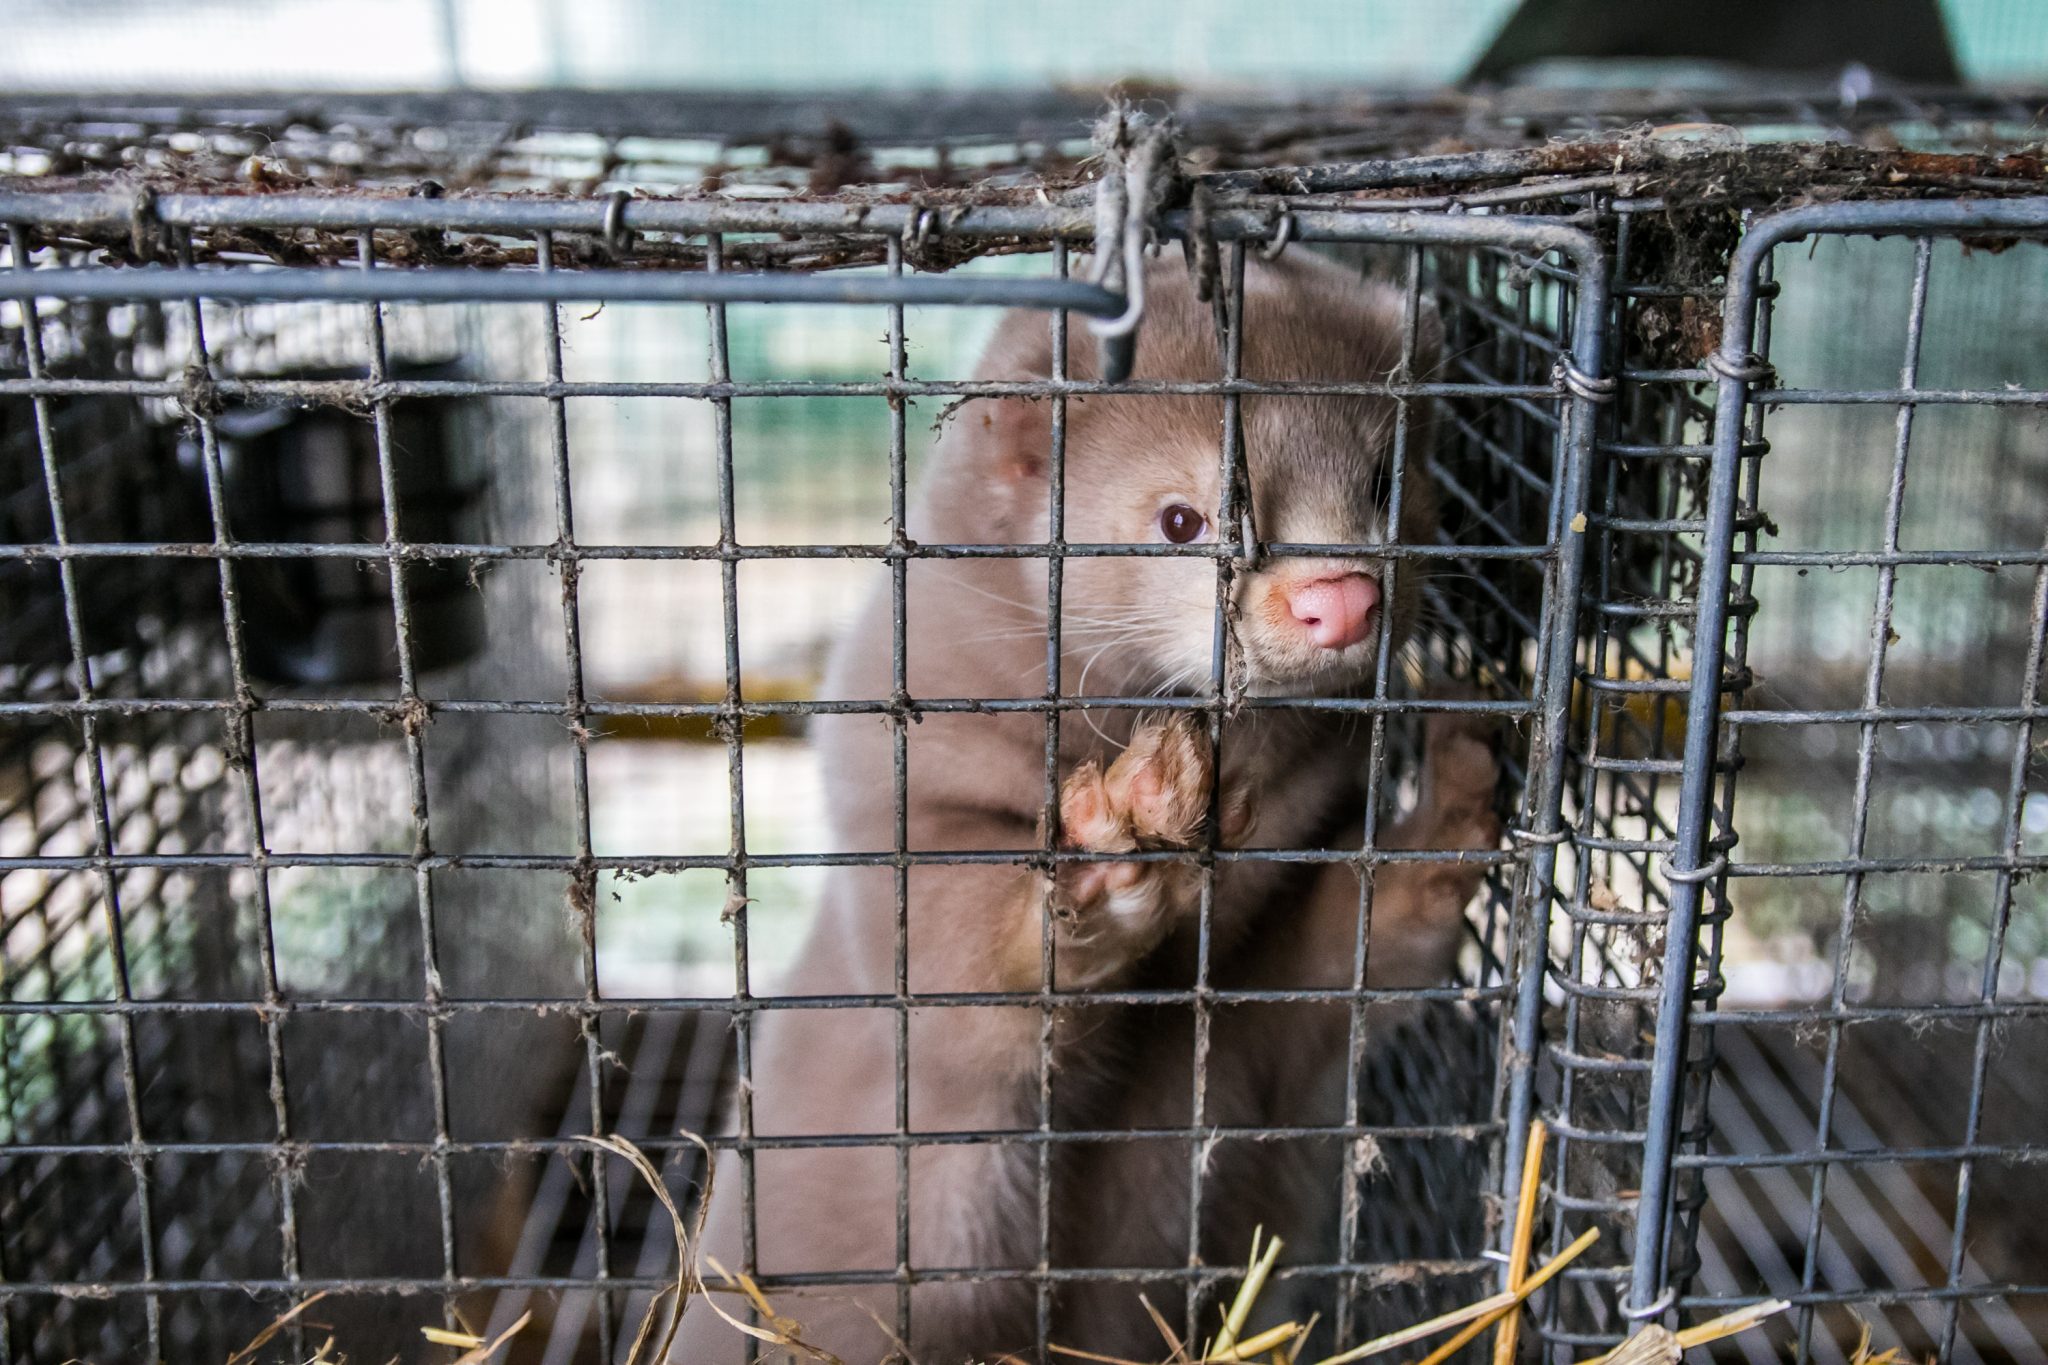 Minkavlere desperate: Har ikke fået kompensation for mink endnu